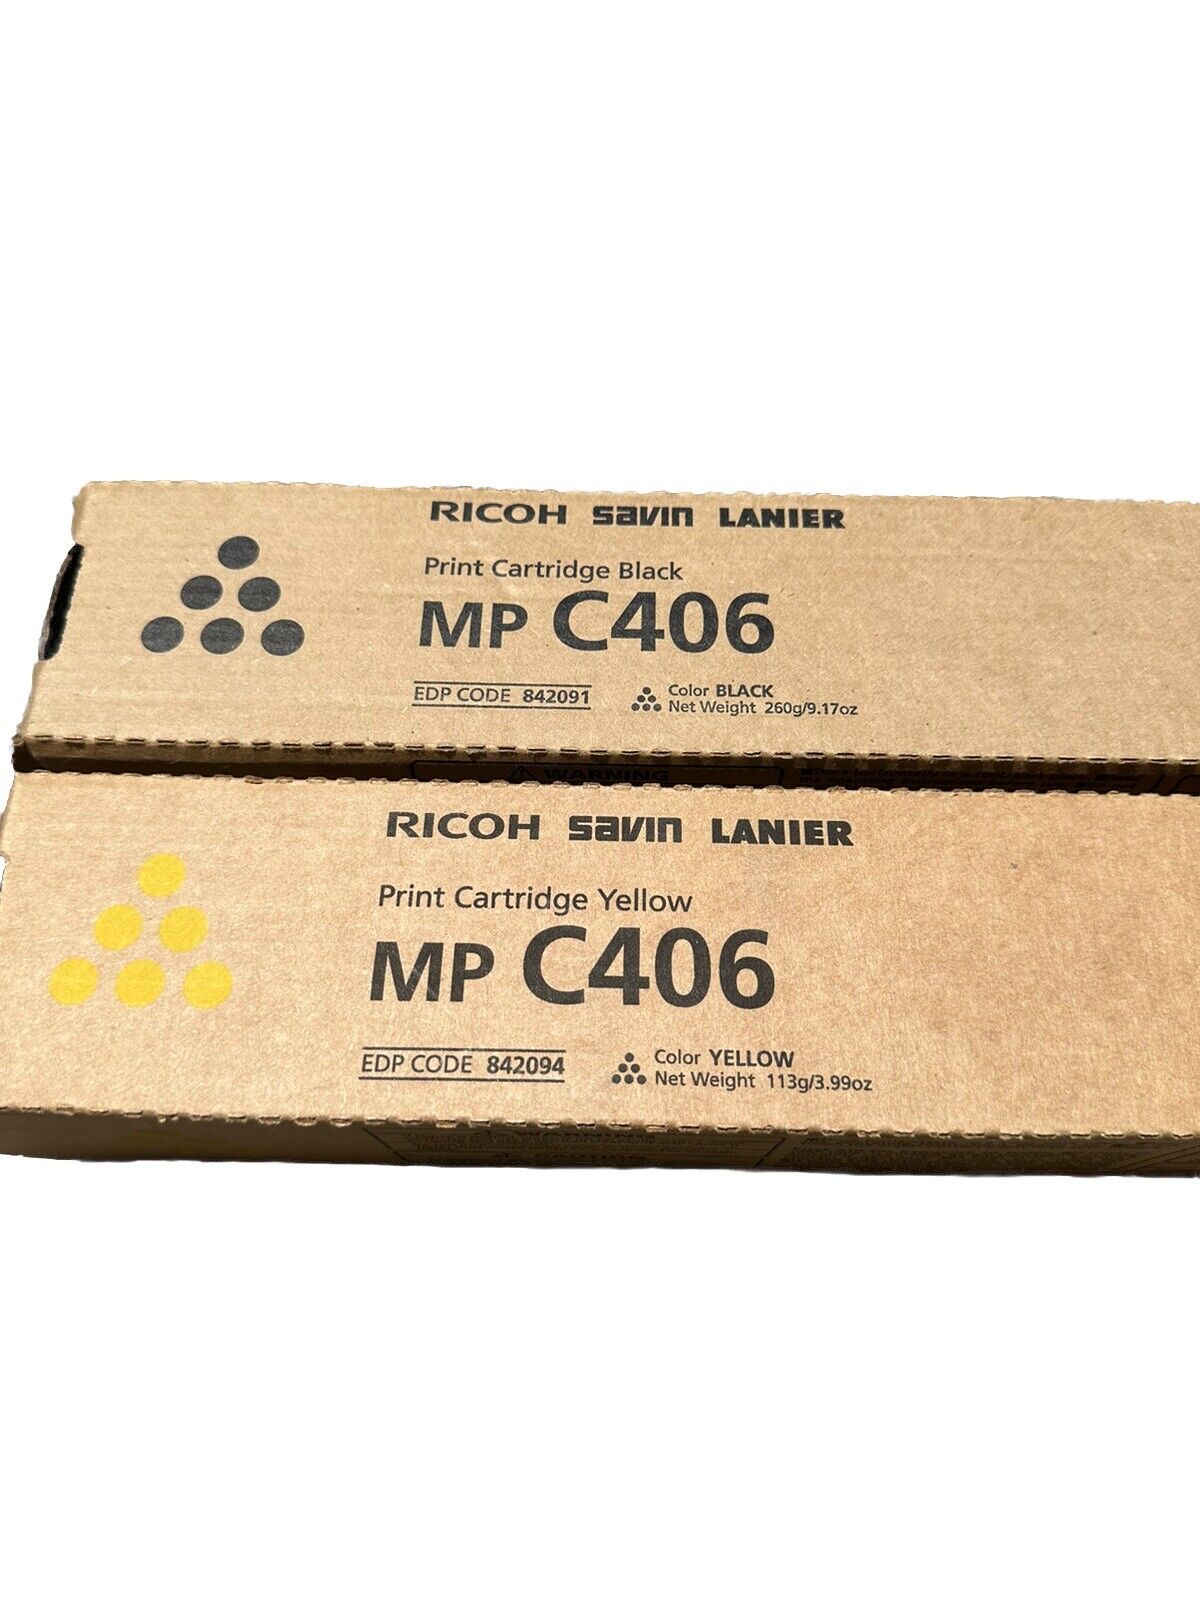 NEW Genuine Ricoh Savin Lanier MP C406-842091 842094 Toner Set